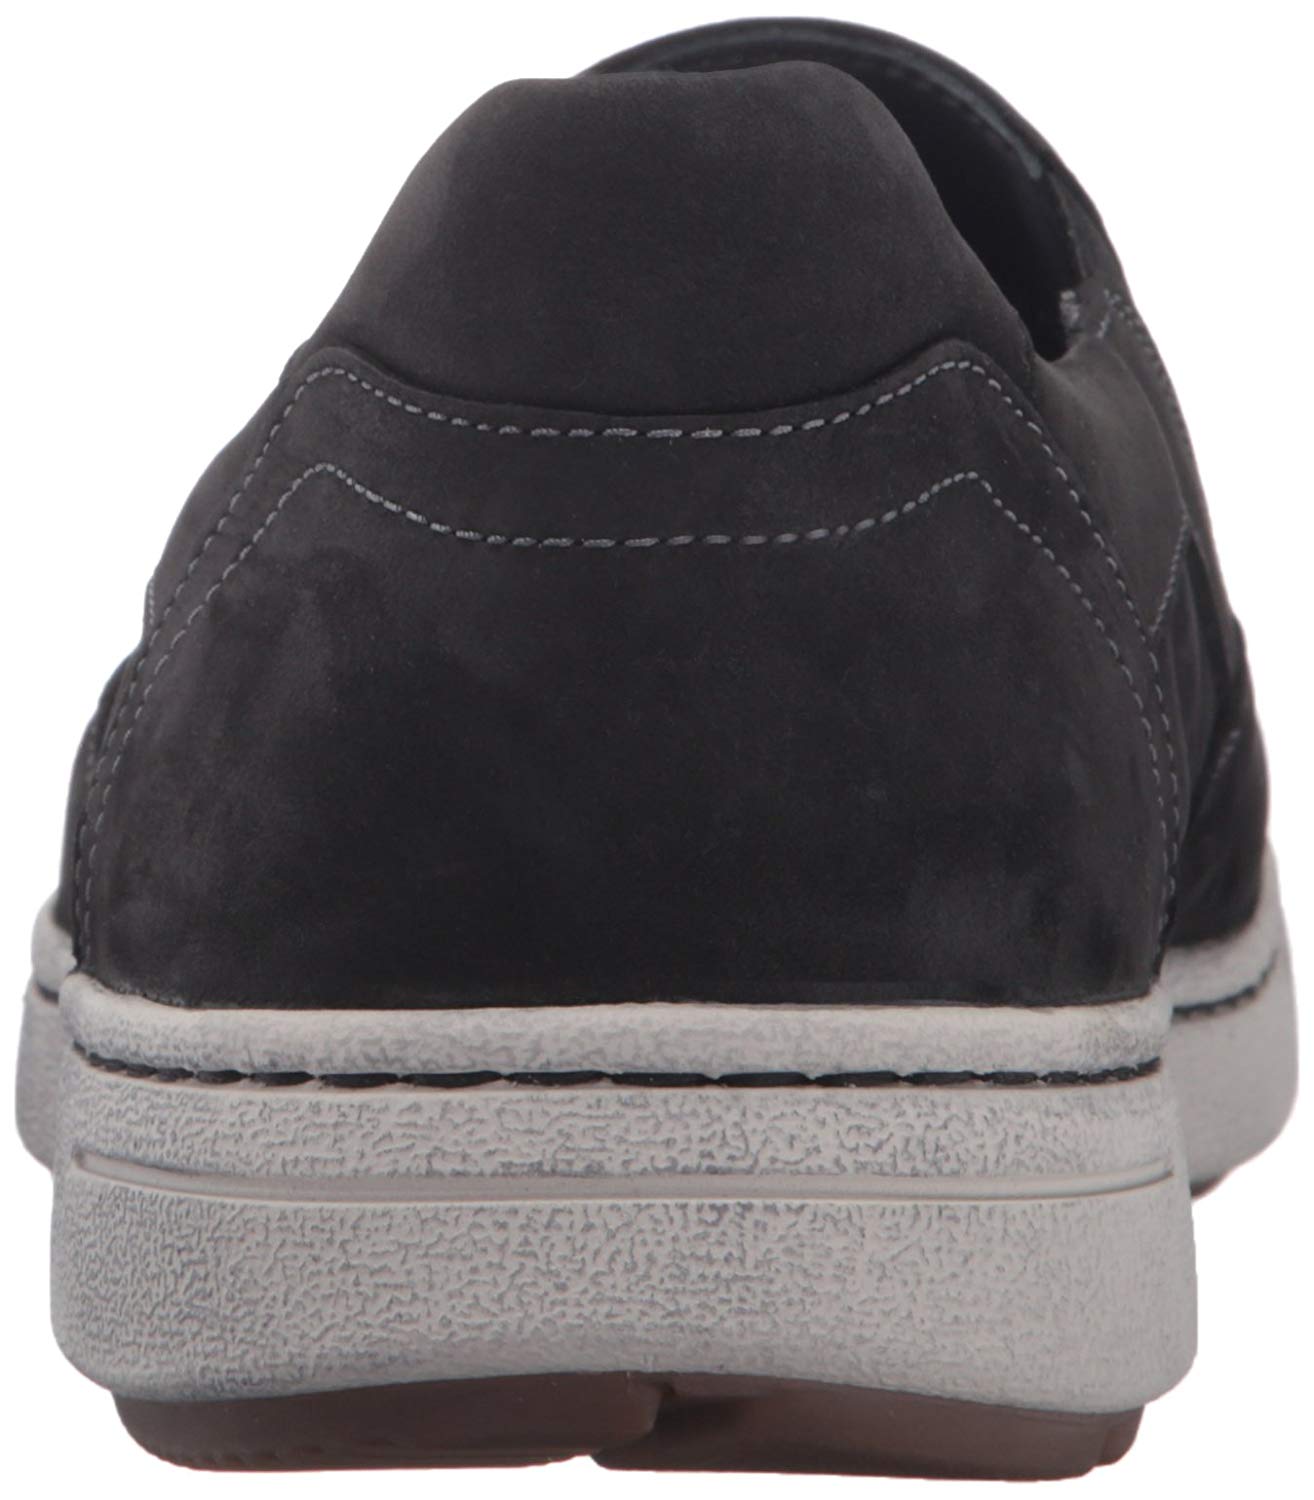 Dansko Men's Viktor Fashion Sneaker, Black, Size 10.0 yCkb | eBay